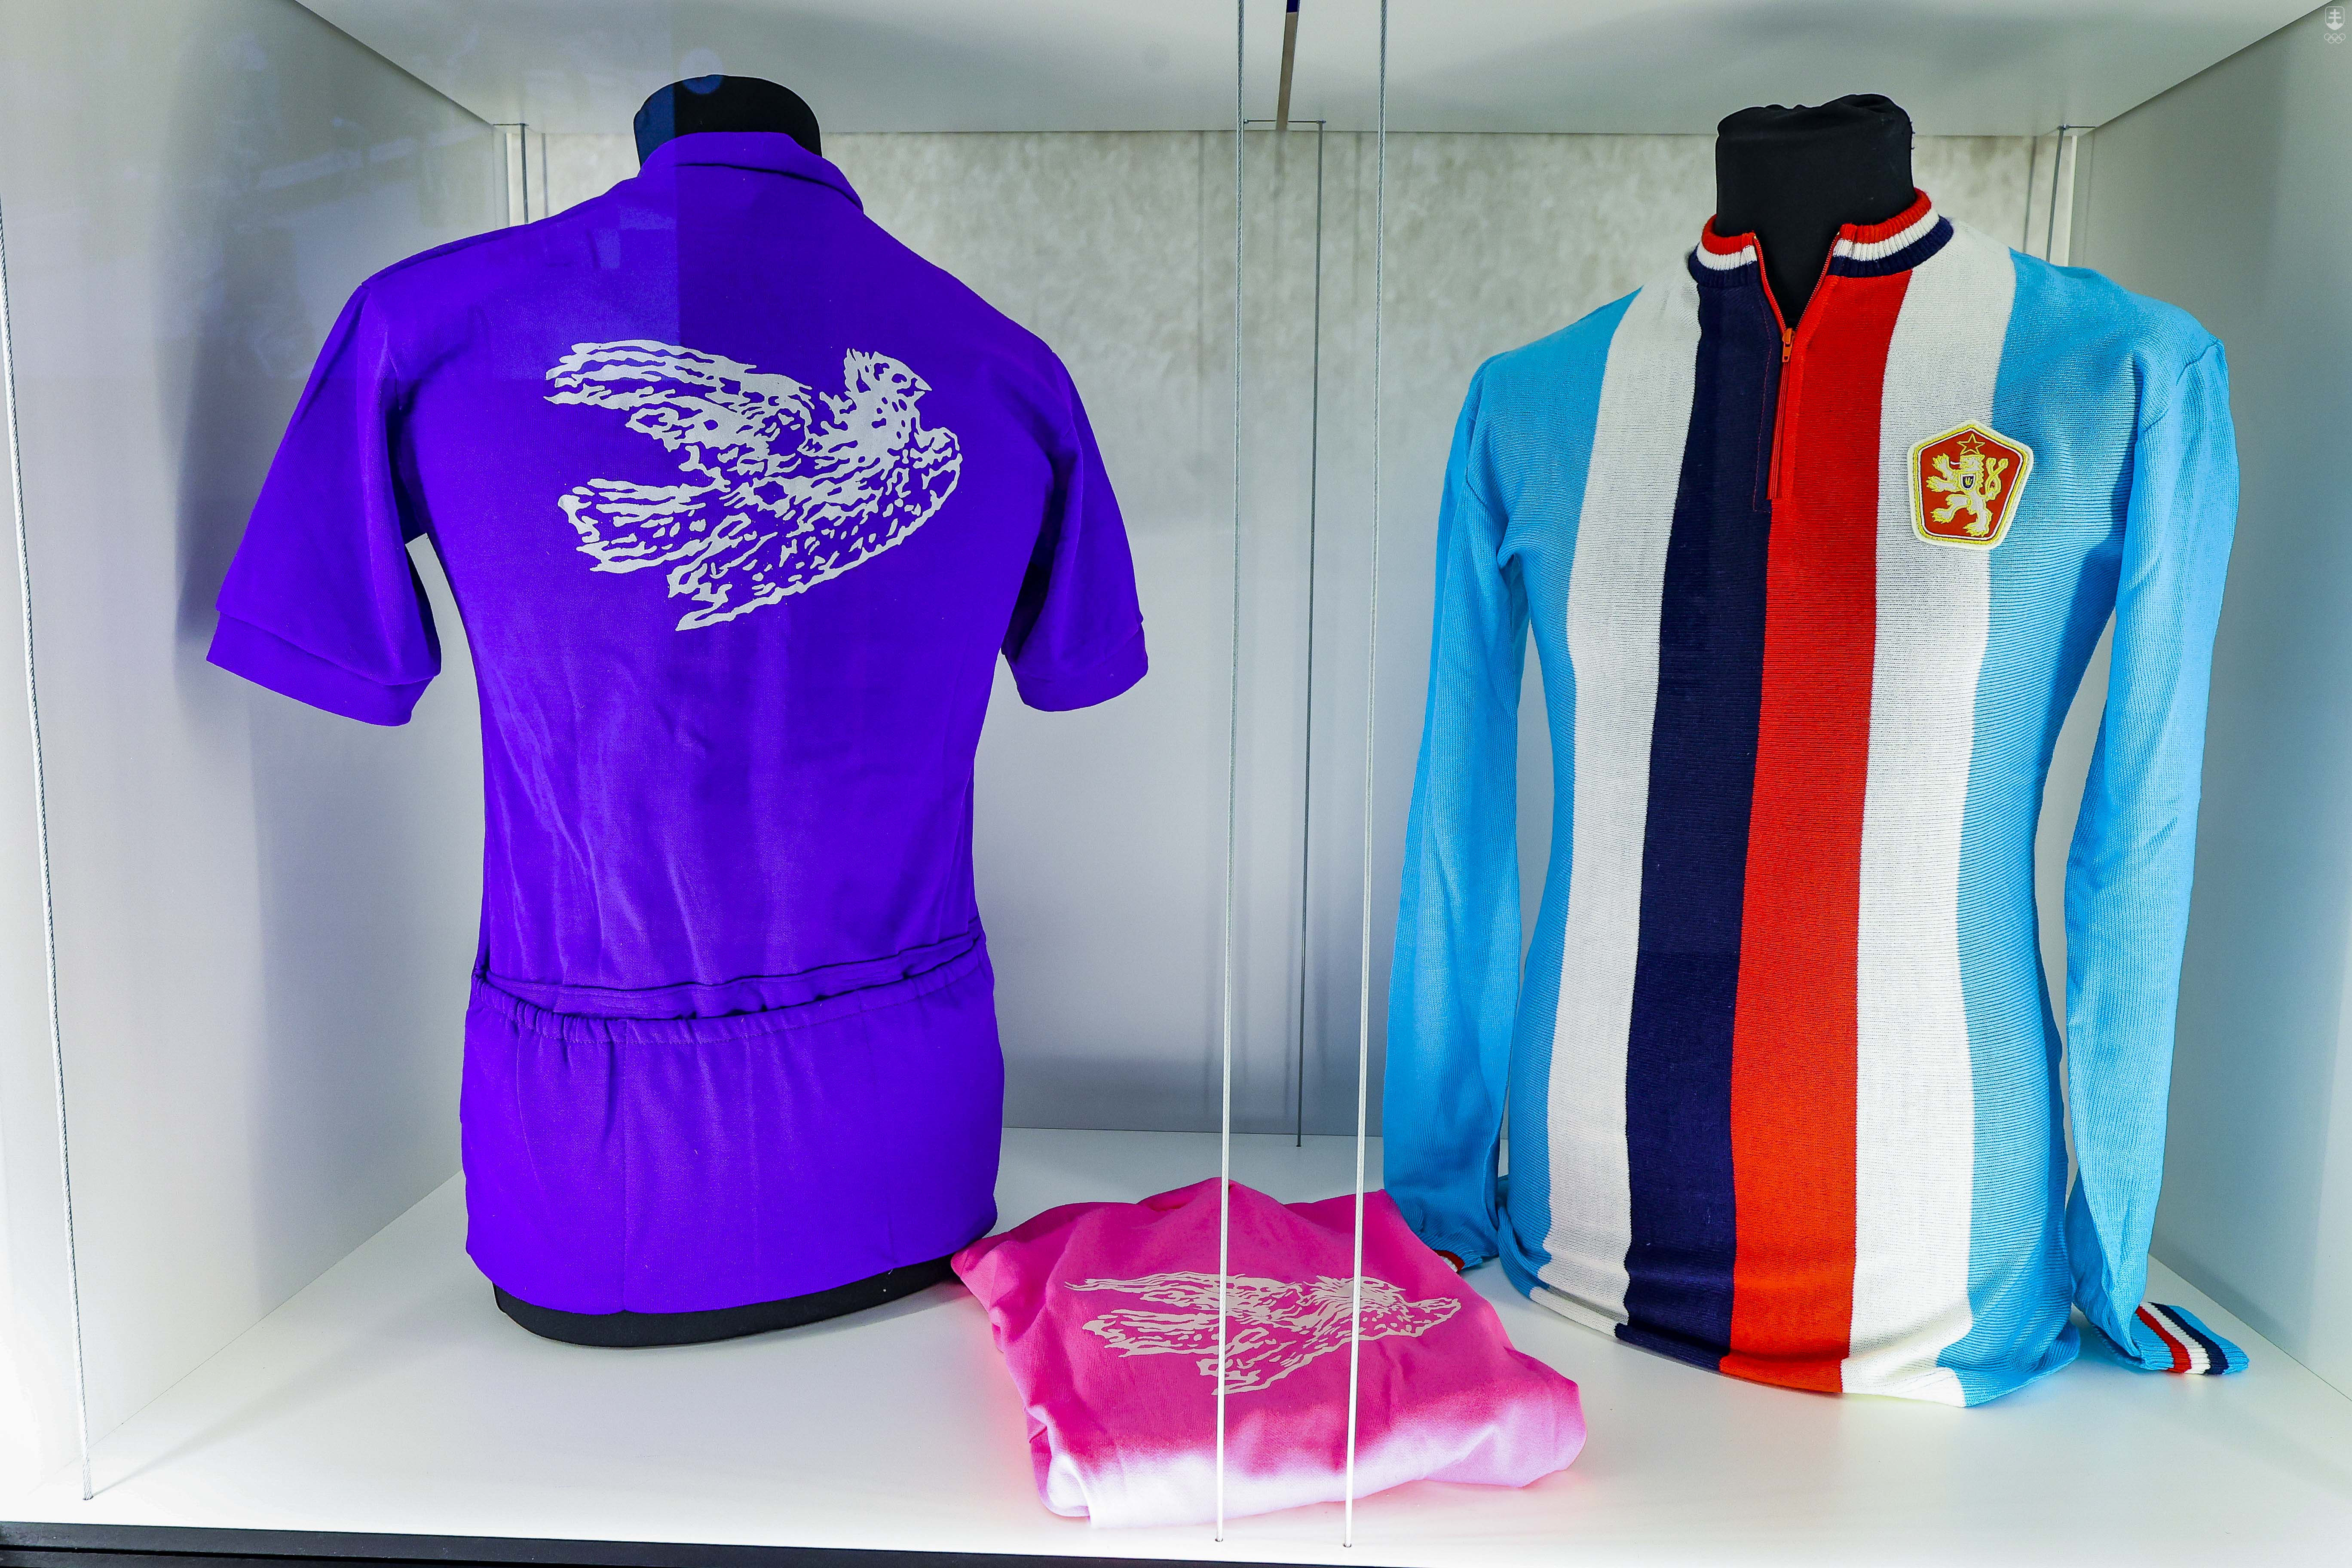 Modré tričká zdobili pretekárov z najlepšieho družstva, fialový zase najaktívnejšieho pretekára. A vpravo je československý dres.